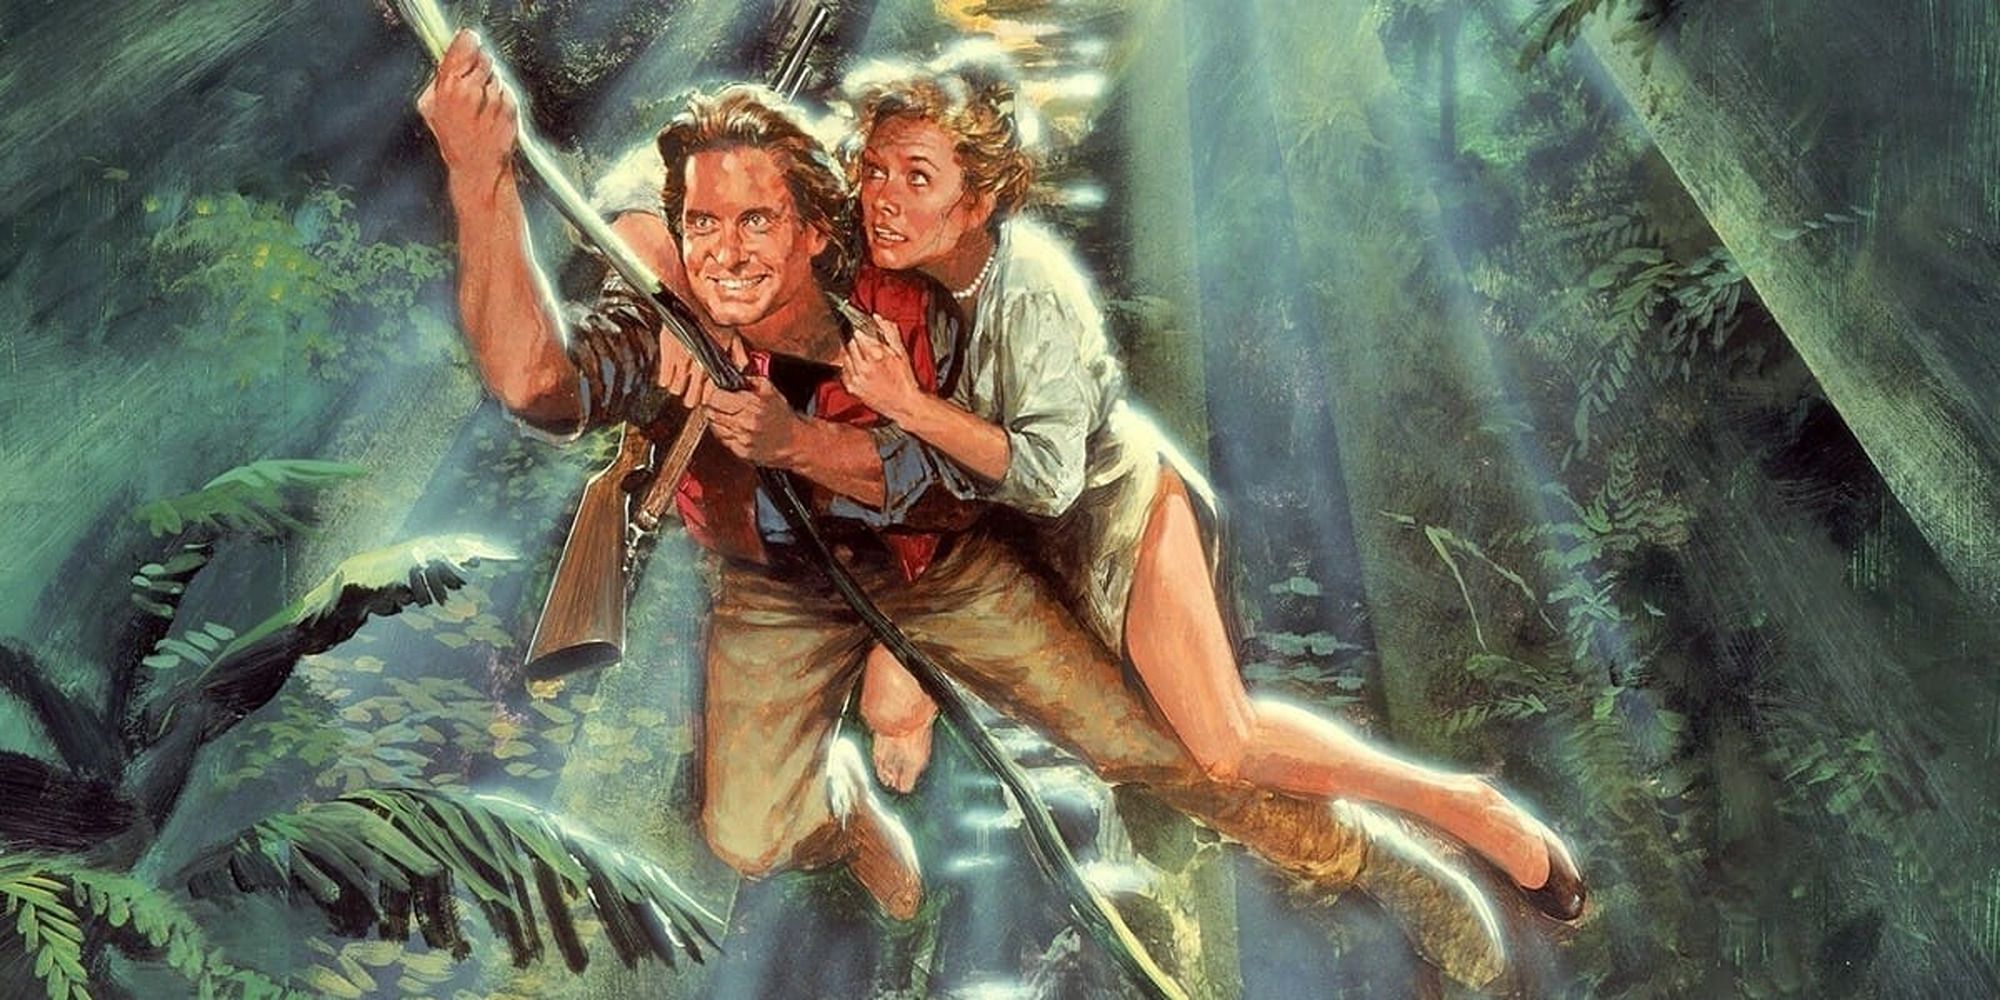 Jack et Joan se balançant sur une vigne dans la jungle sur l'affiche du film Romancing the Stone.